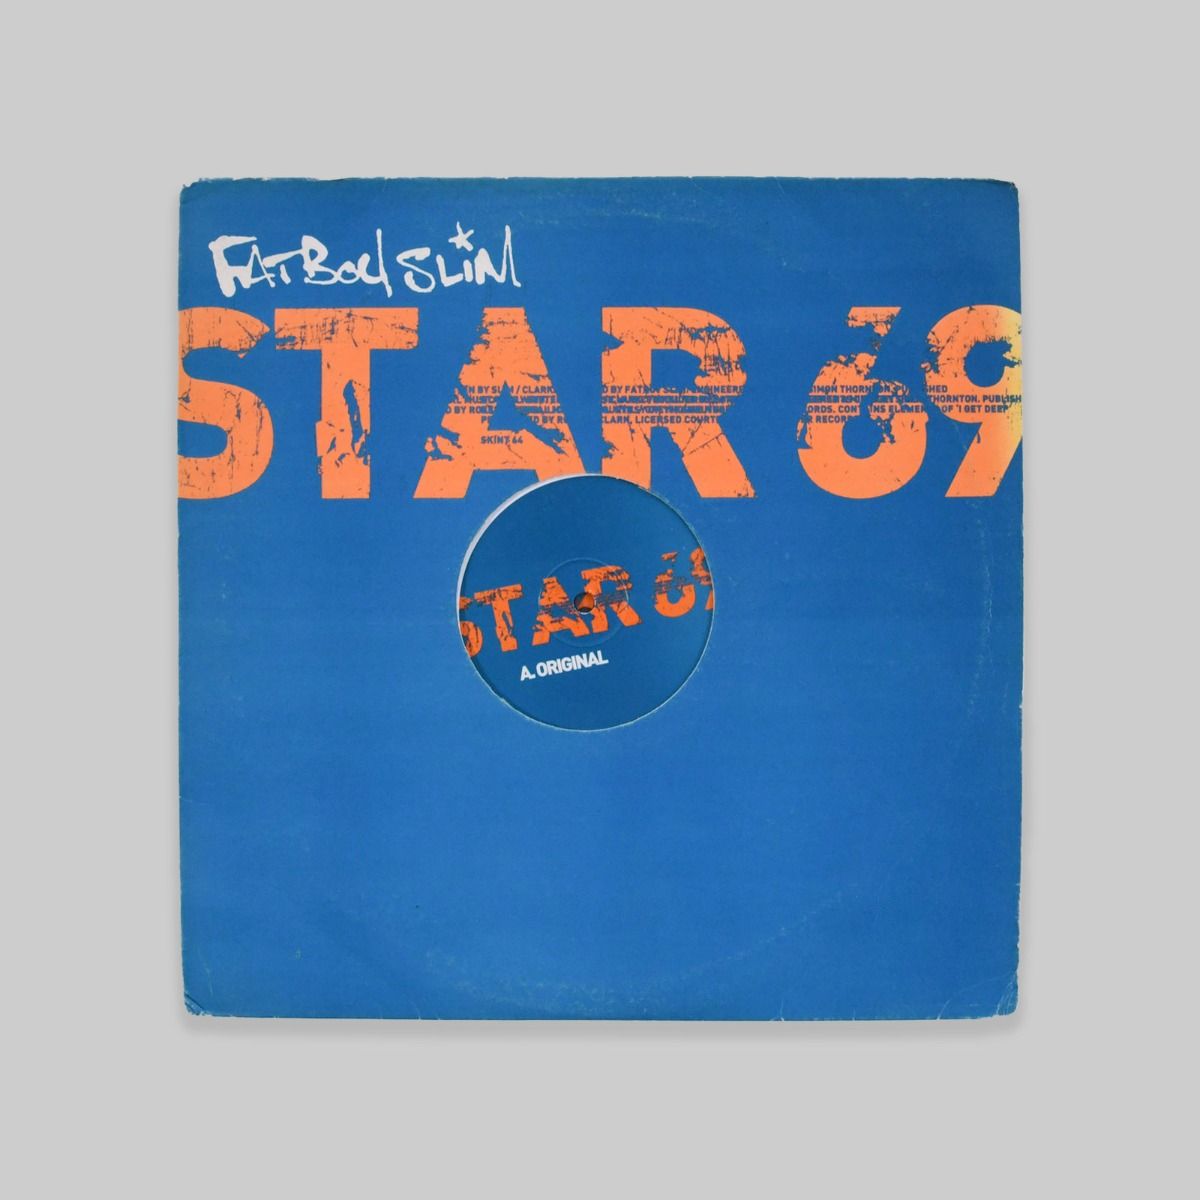 Fatboy Slim – Star 69 (What The F**k) 12"